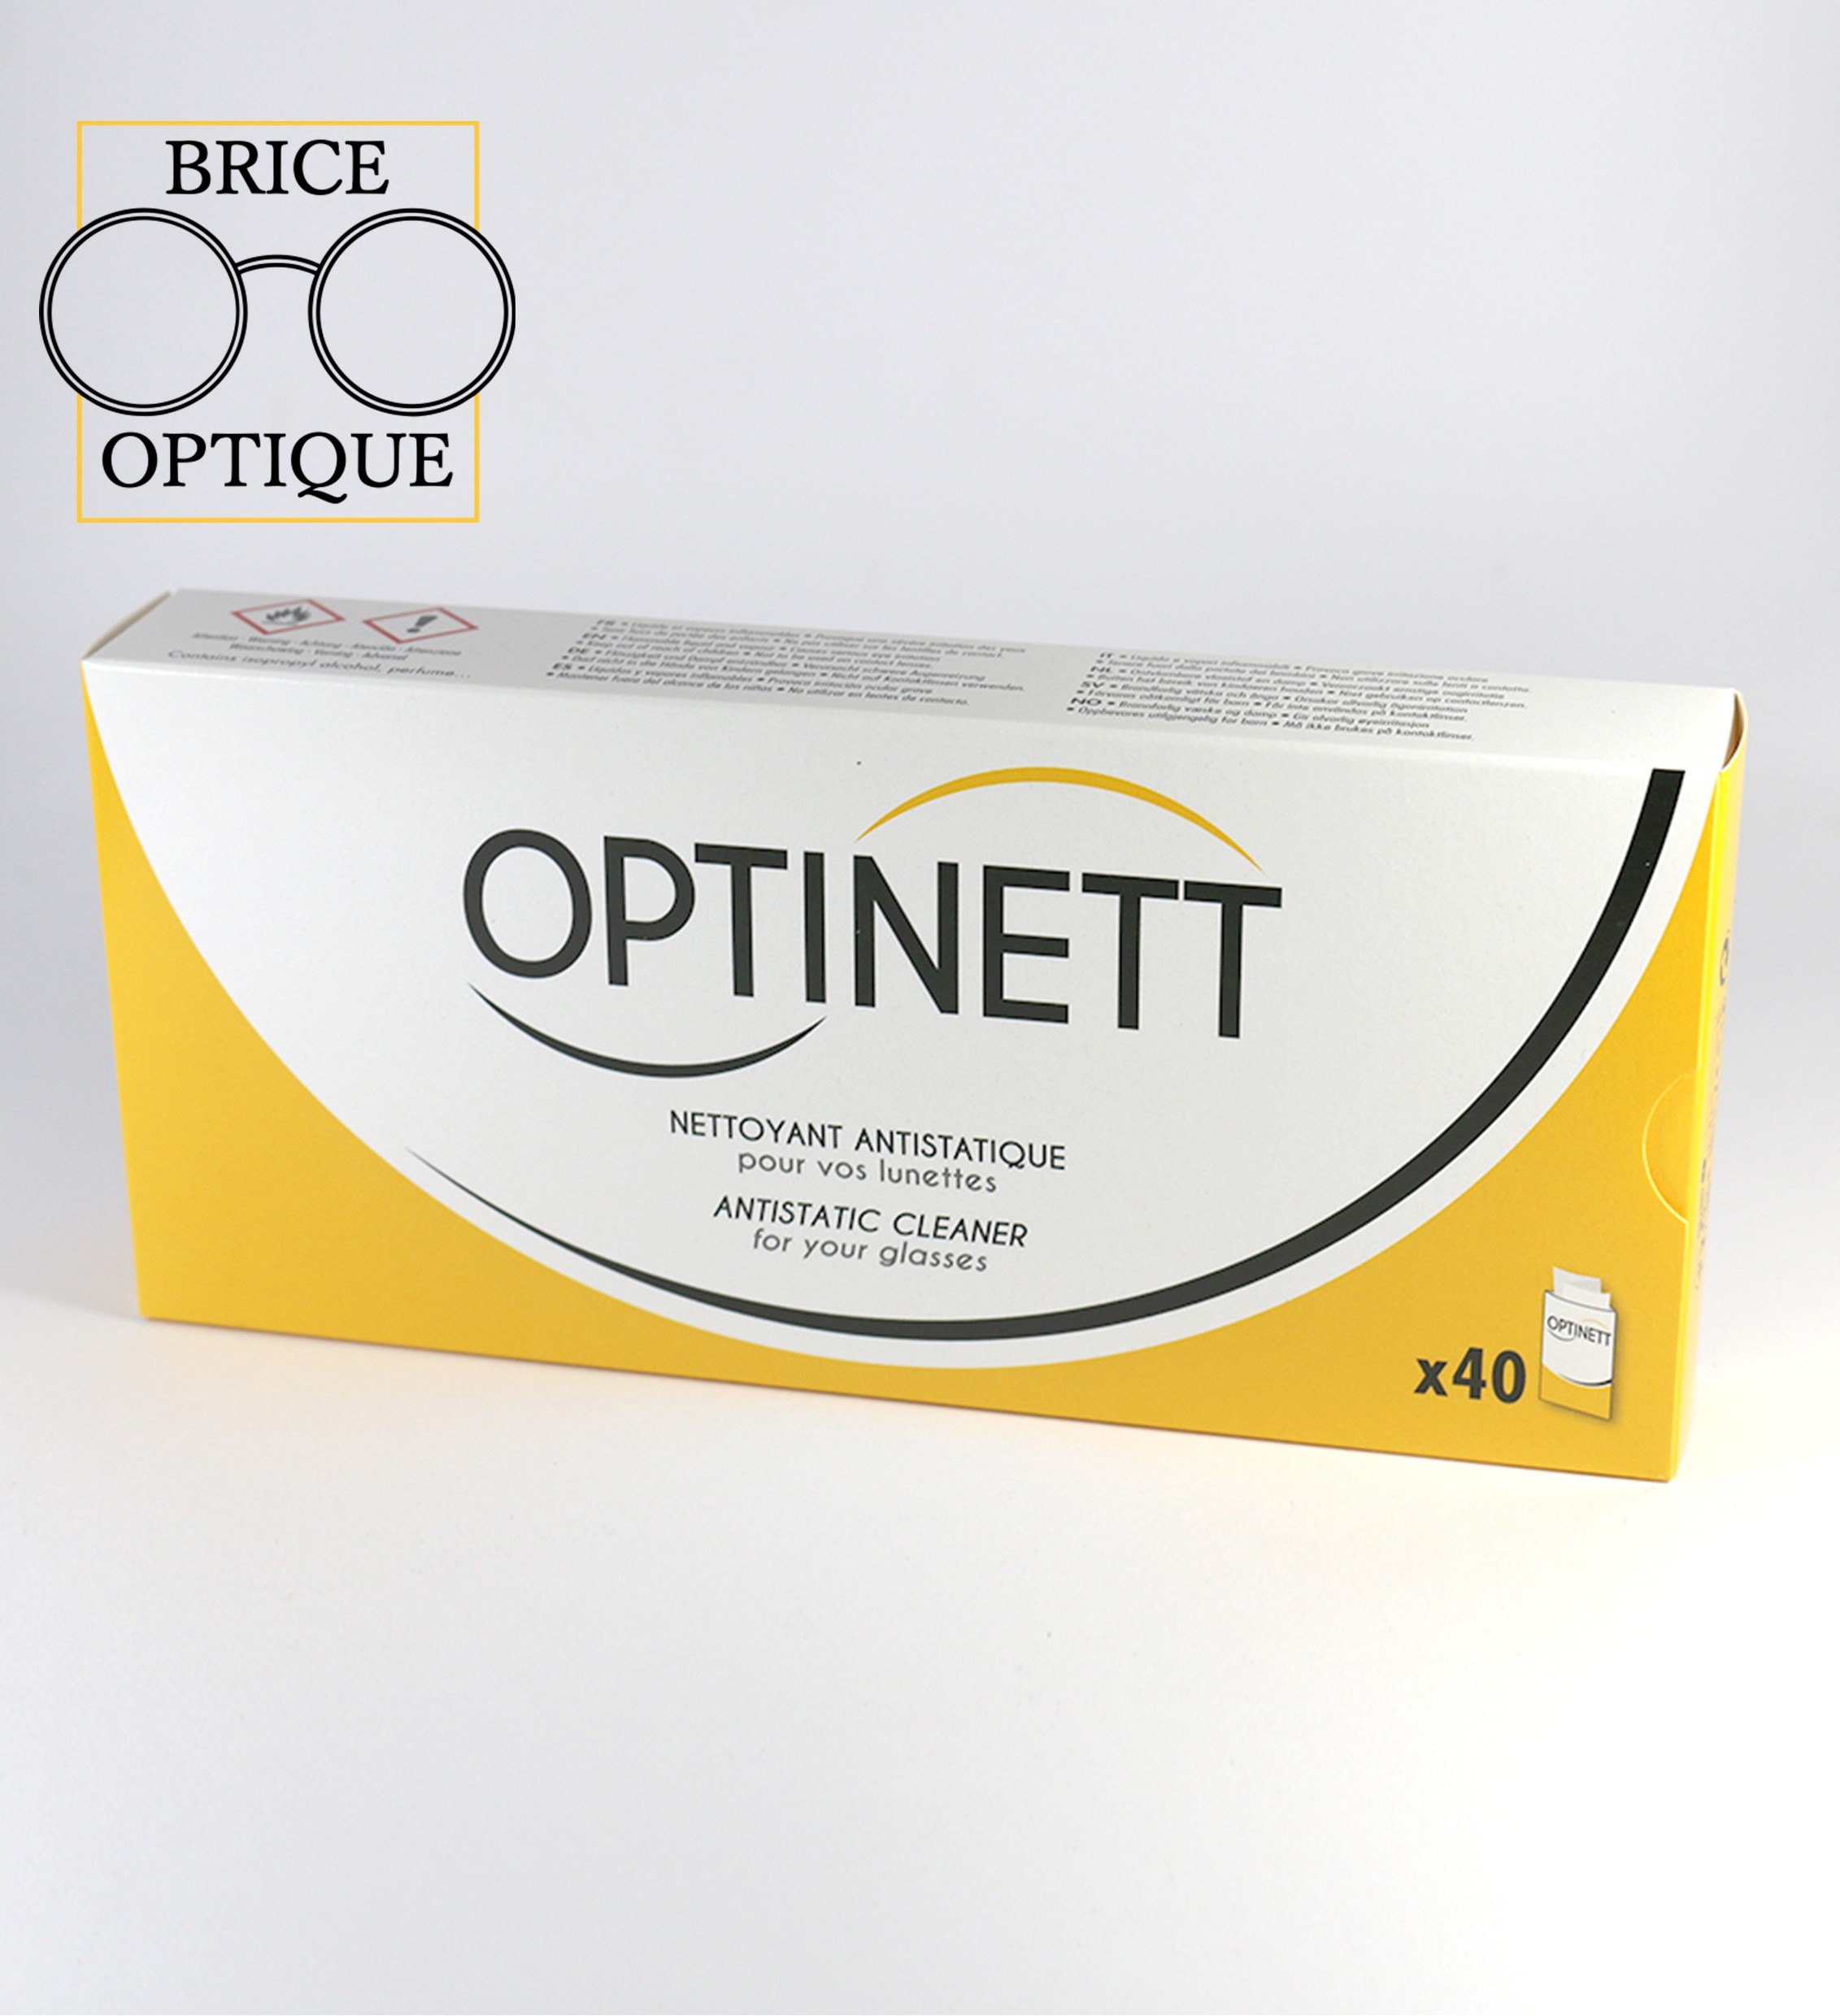 Lingettes nettoyantes antistatiques pour lunettes Optinett - 40 lingettes -  BRICE OPTIQUE